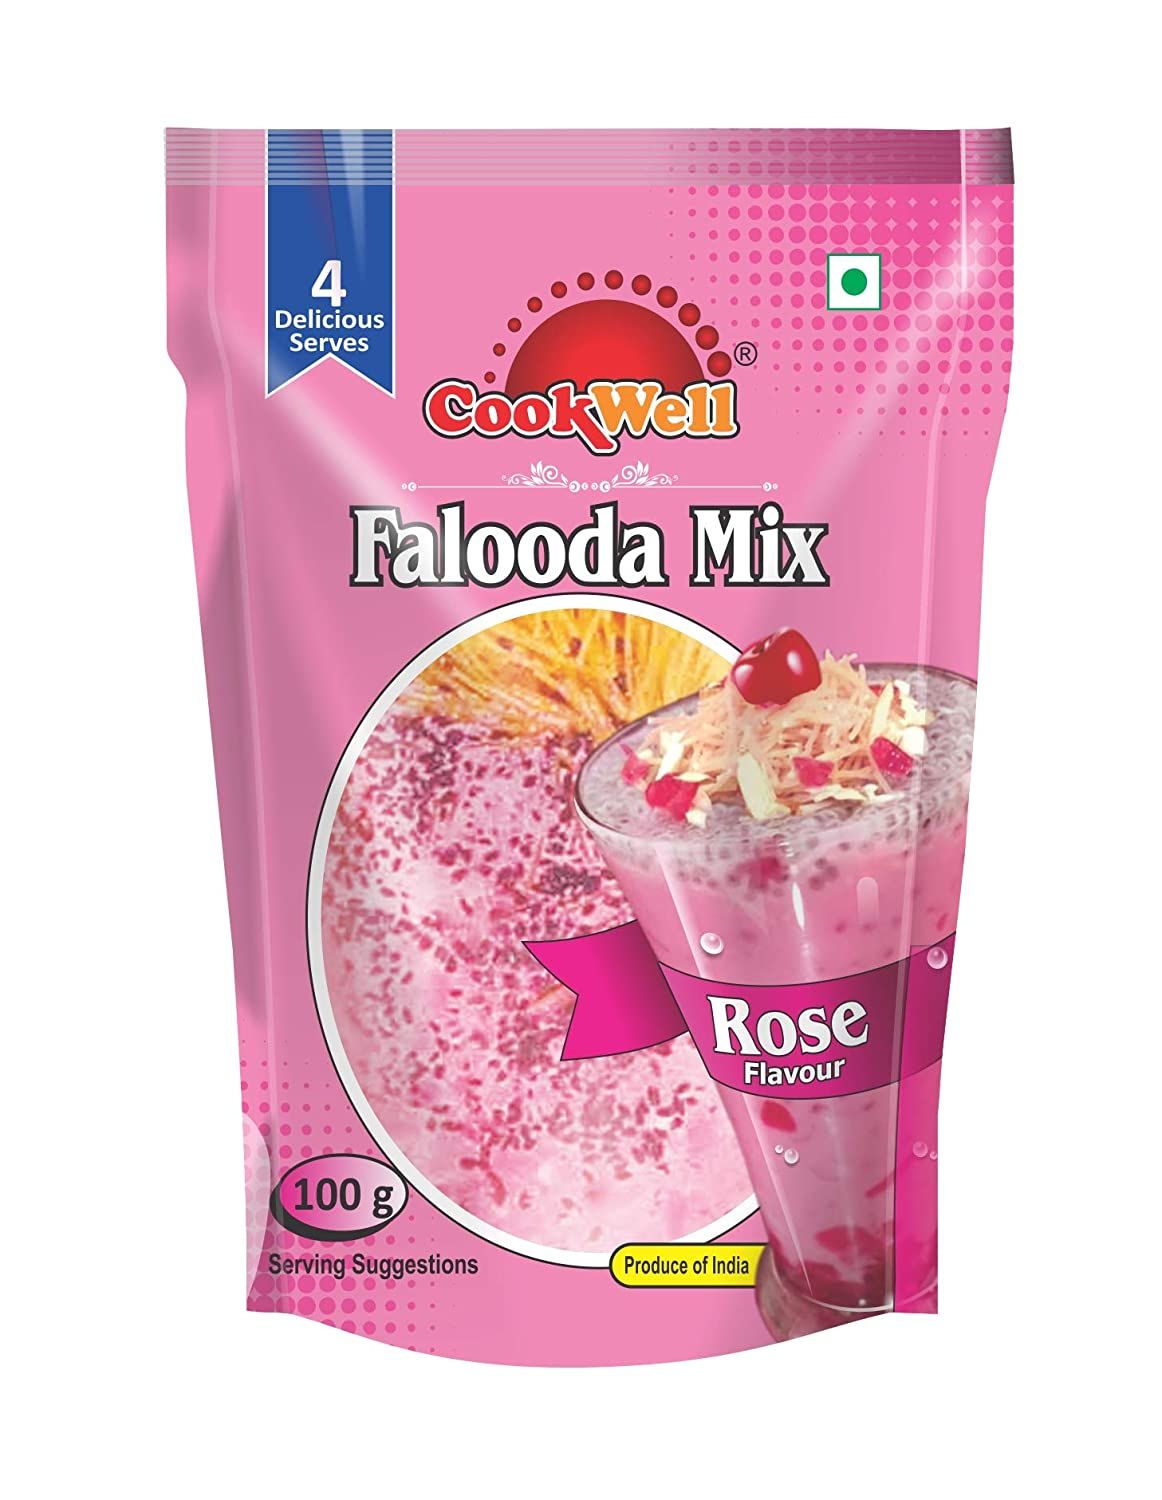 Cookwell Falooda Mix Rose Image